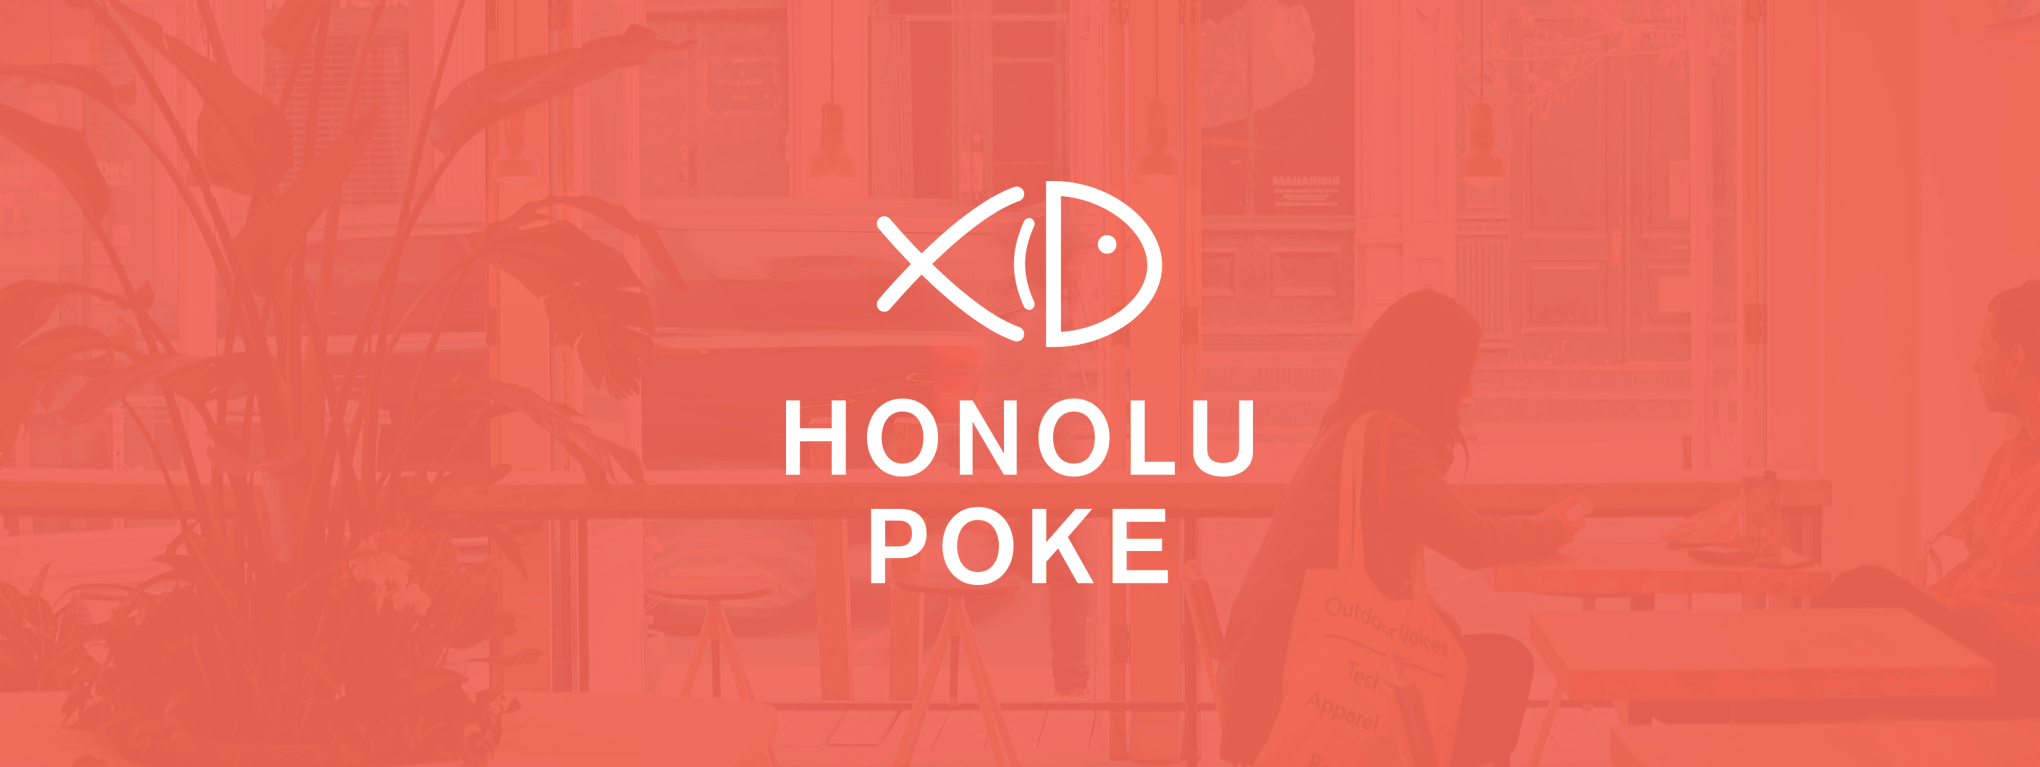 Honolu Poke